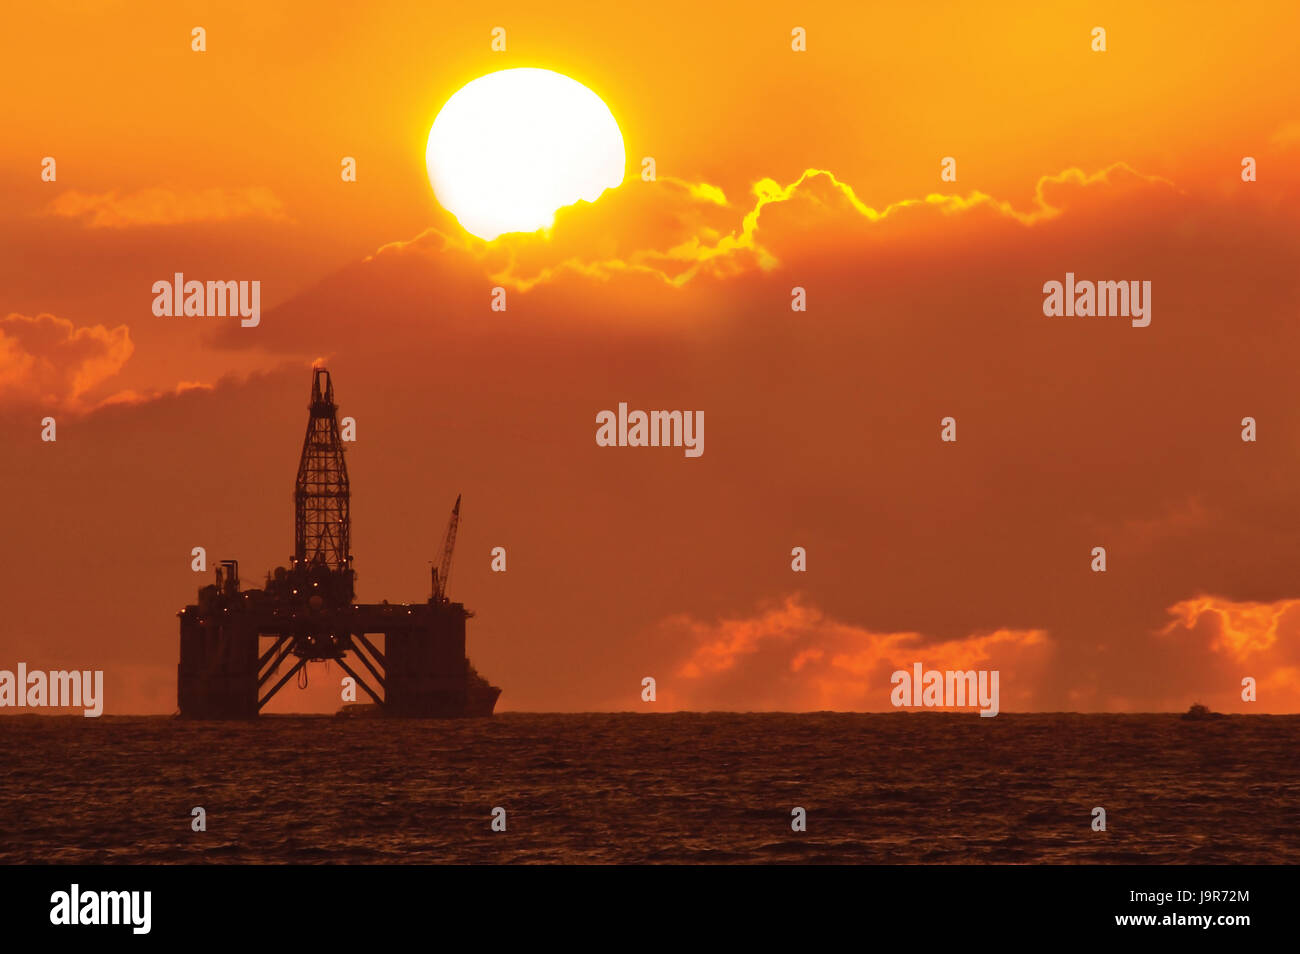 Coucher de soleil à travers les nuages, silhouetting une plate-forme pétrolière en mer. Banque D'Images